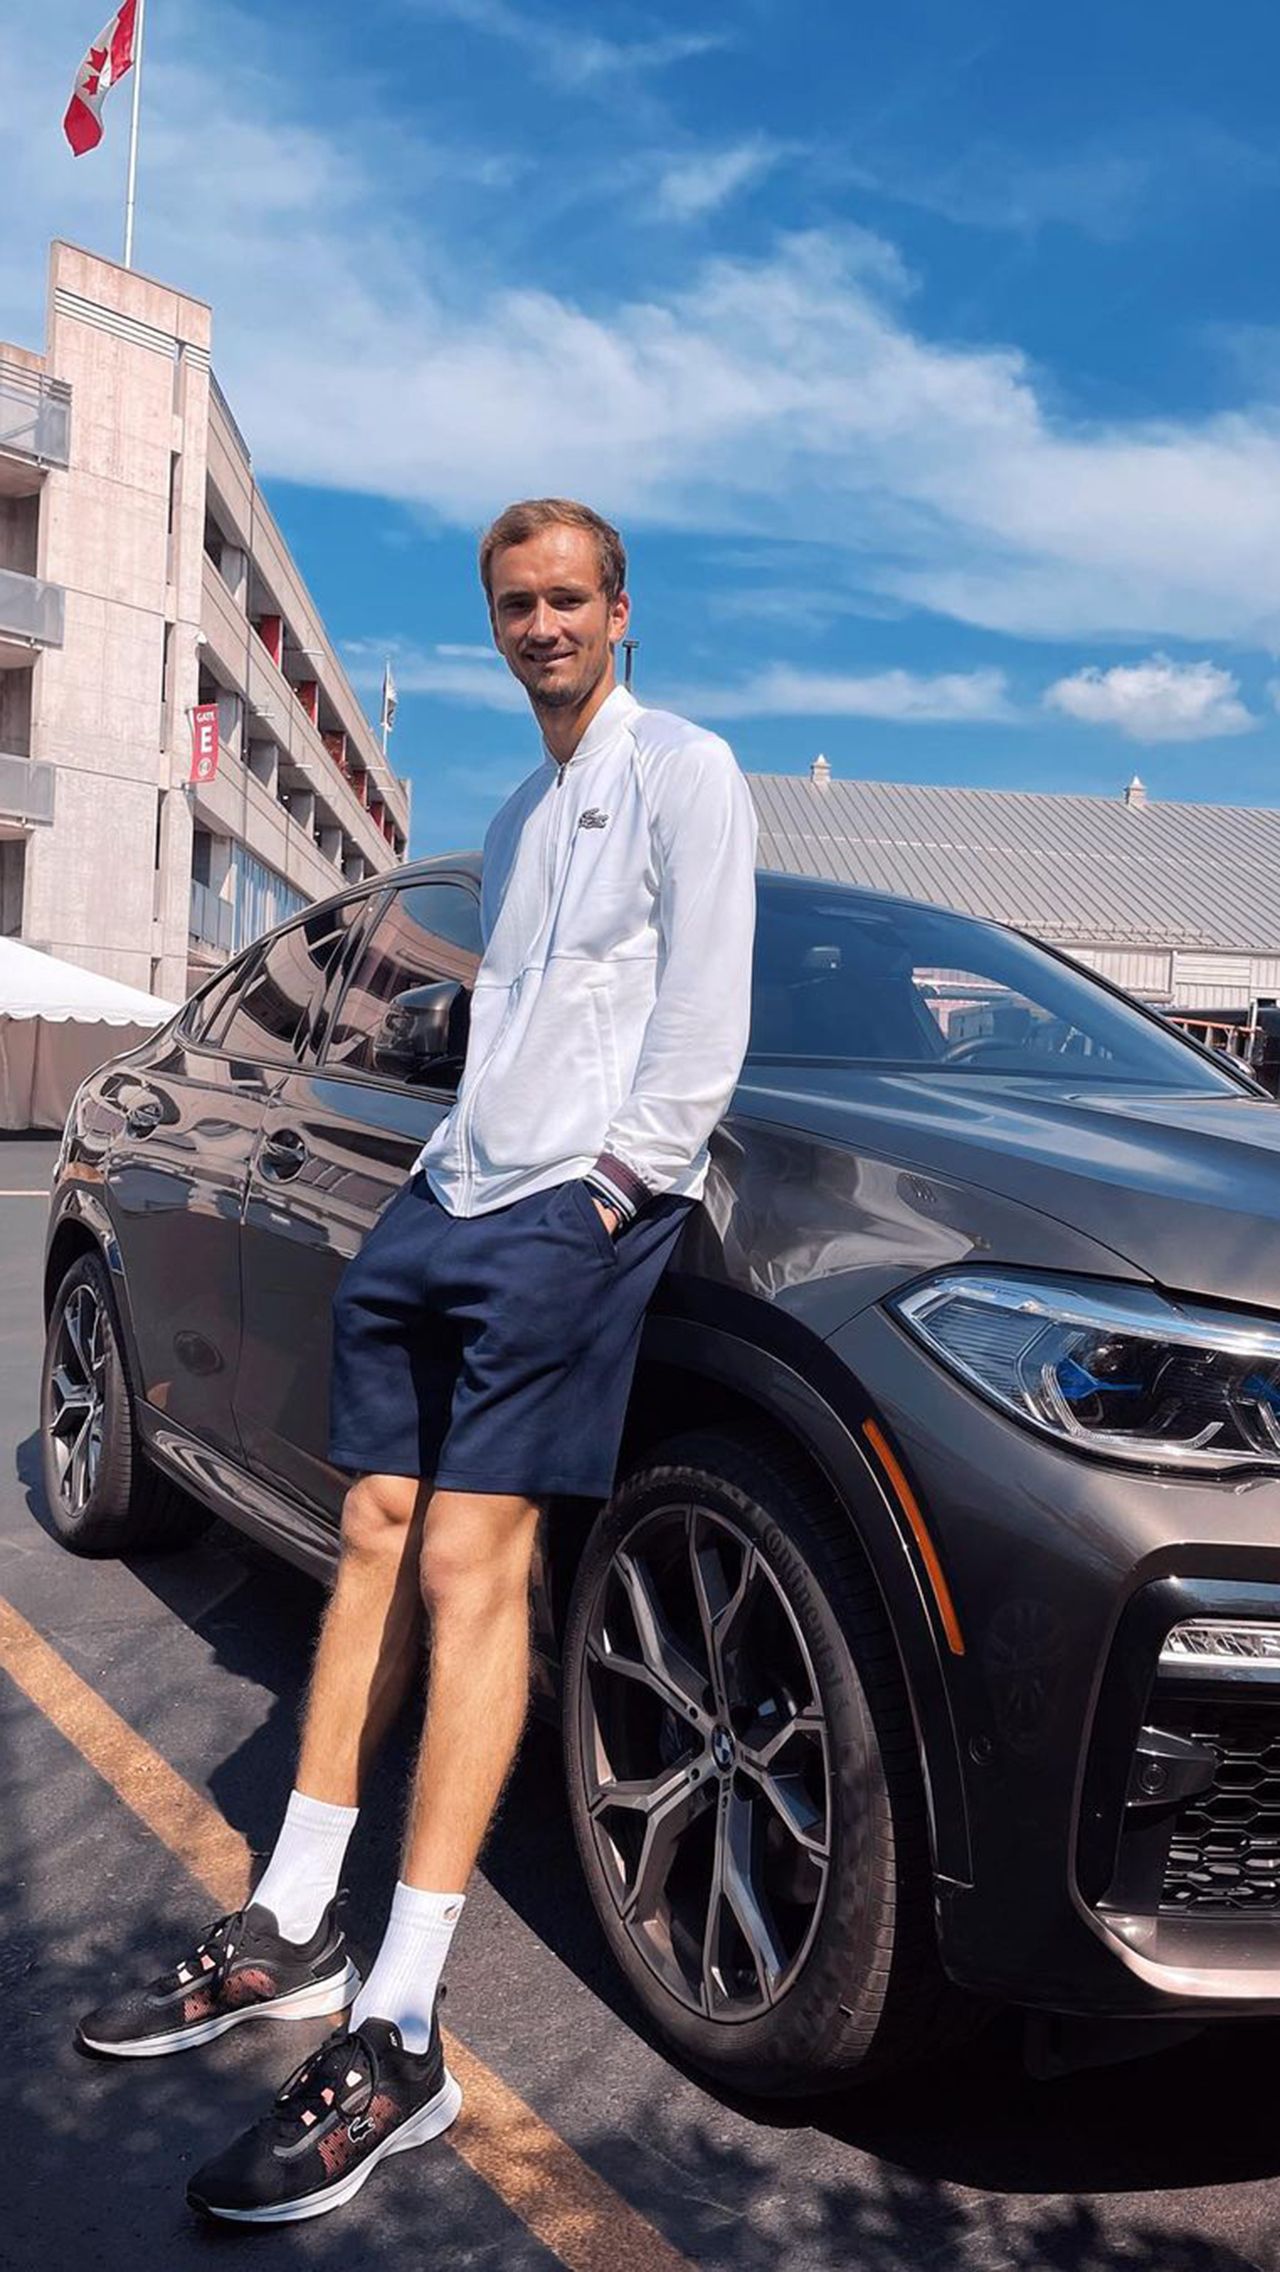 Главными спонсорами Медведева являются автоконцерн BMW, финансовый бренд Tinkoff, экипировщик Lacoste и часовой бренд Bovet. Новые партнёры – игровой бренд HyperX и китайский бренд Guojiao 1573.